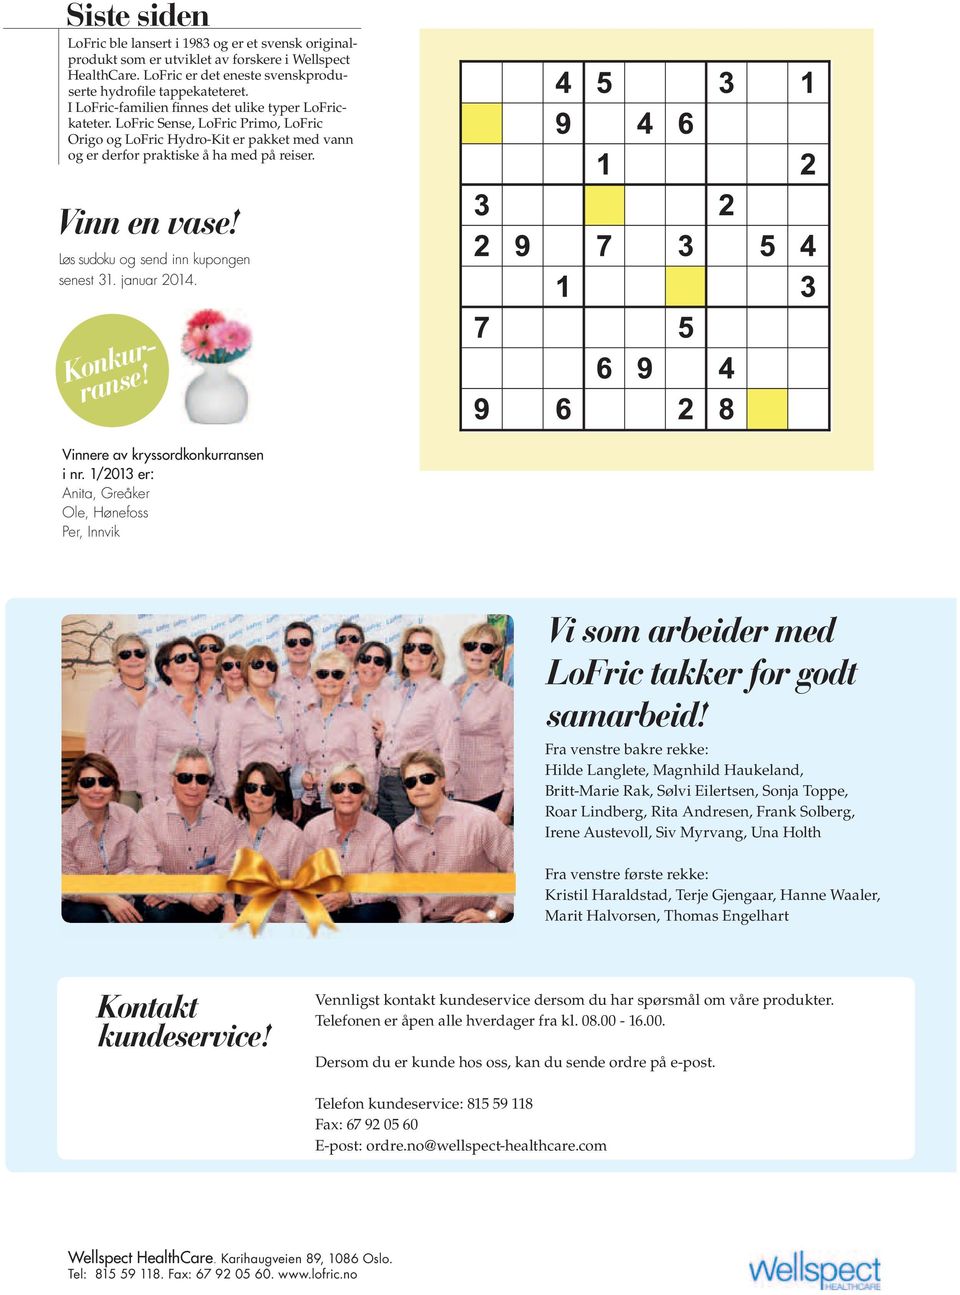 Løs sudoku og send inn kupongen senest 31. januar 2014. Konkurranse! Vinnere av kryssordkonkurransen i nr.